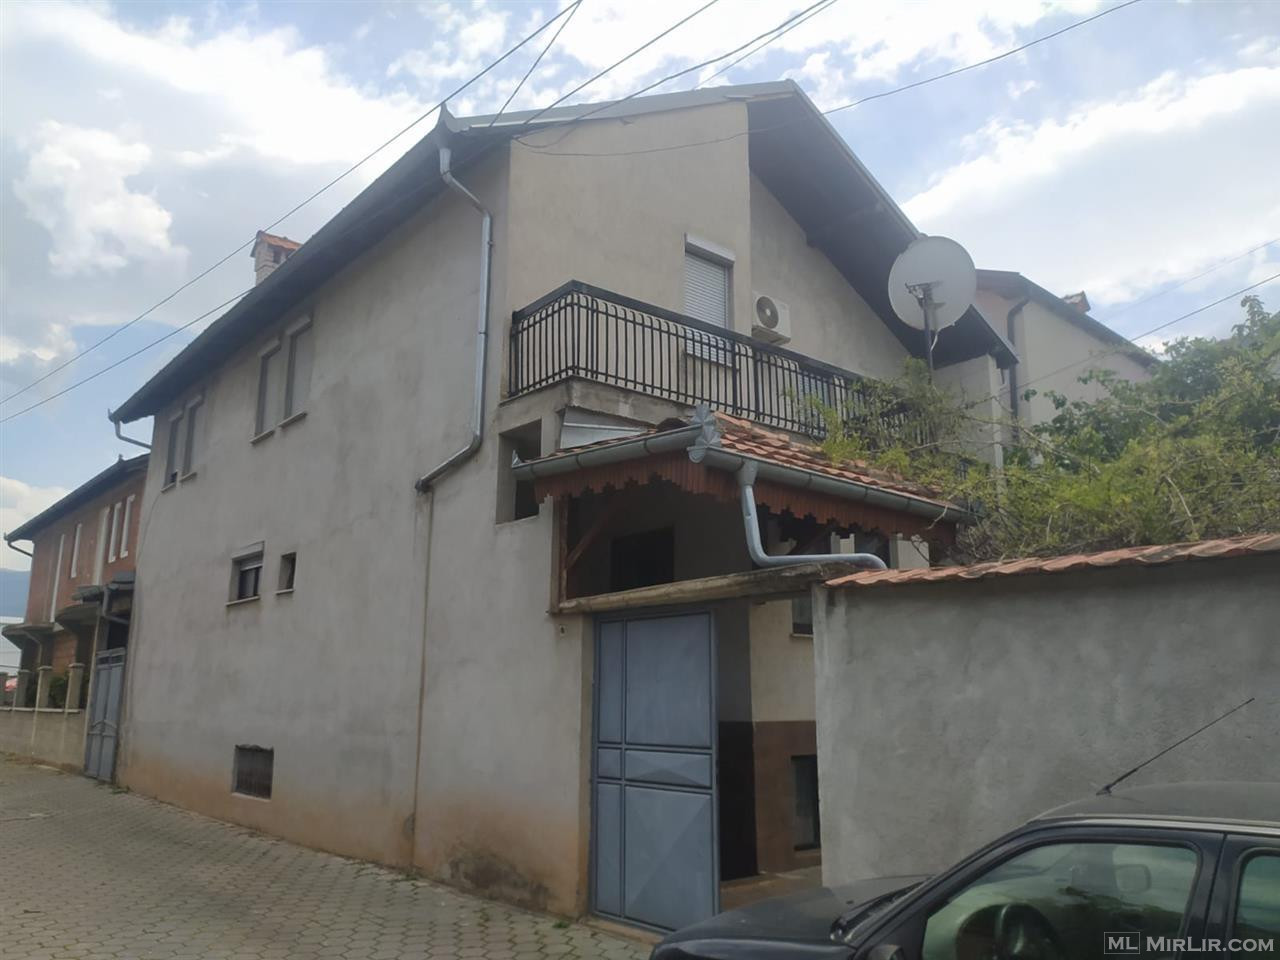 Shtëpi në shitje Prizren “Jeta e Re”